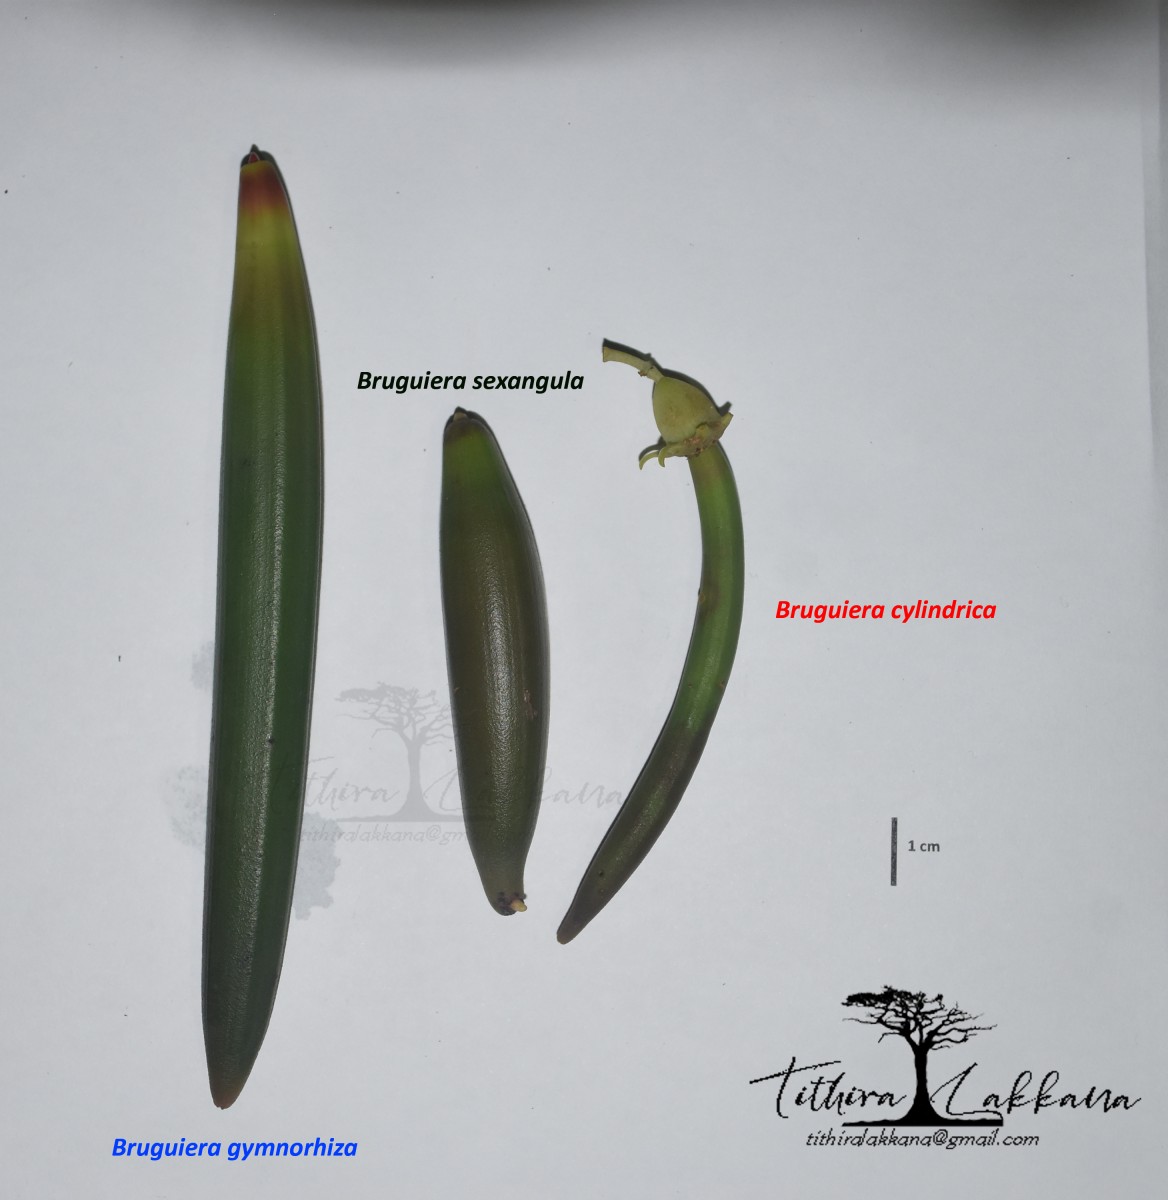 Bruguiera gymnorhiza (L.) Lam.